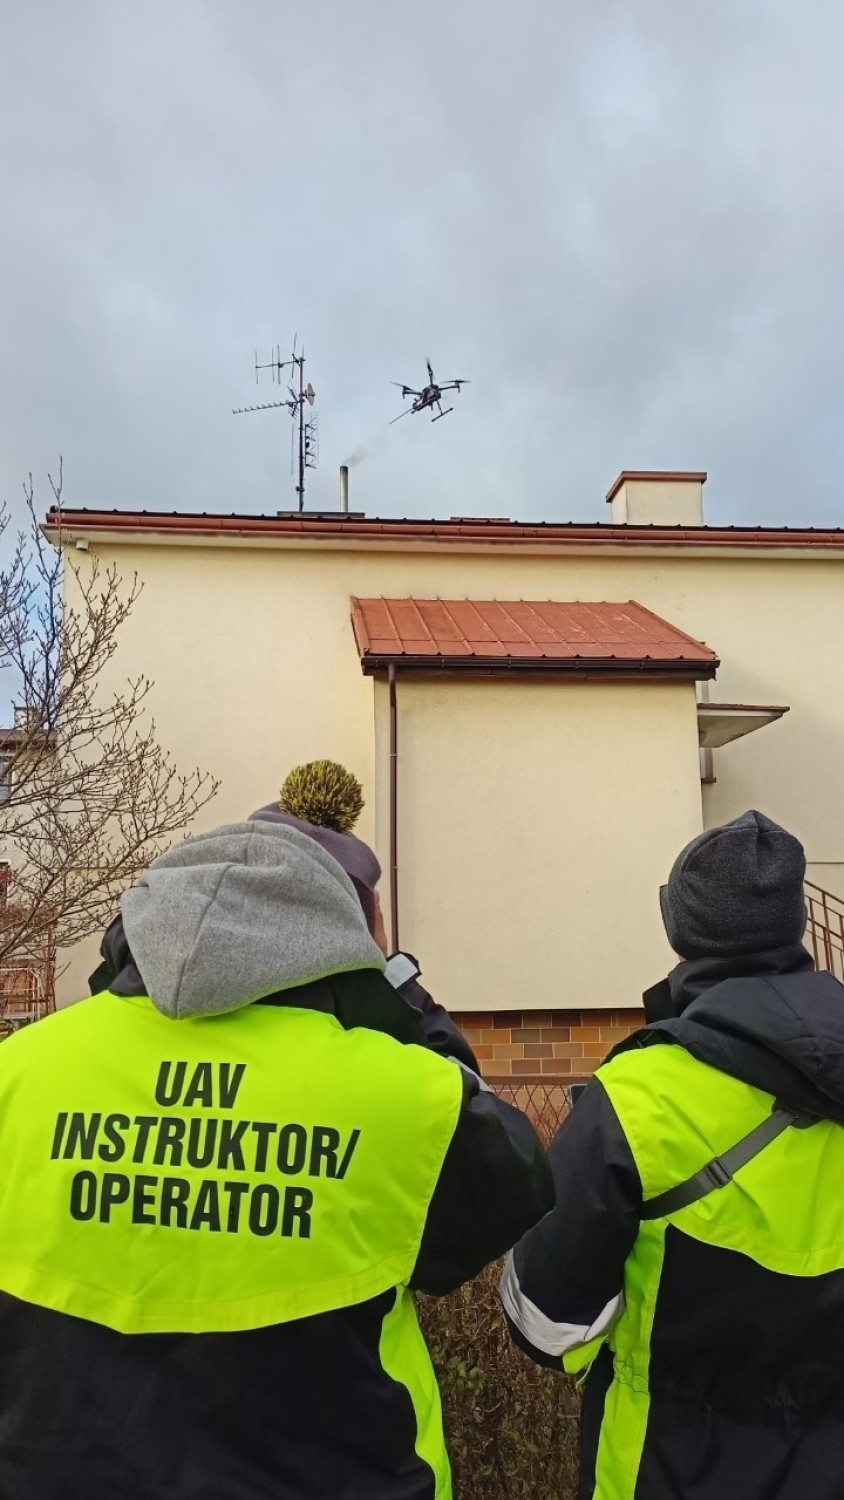 Antysmogowe drony sprawdzają jakość powietrza nad osiedlami Zalesie i Przybyszówka w Rzeszowie [ZDJĘCIA]